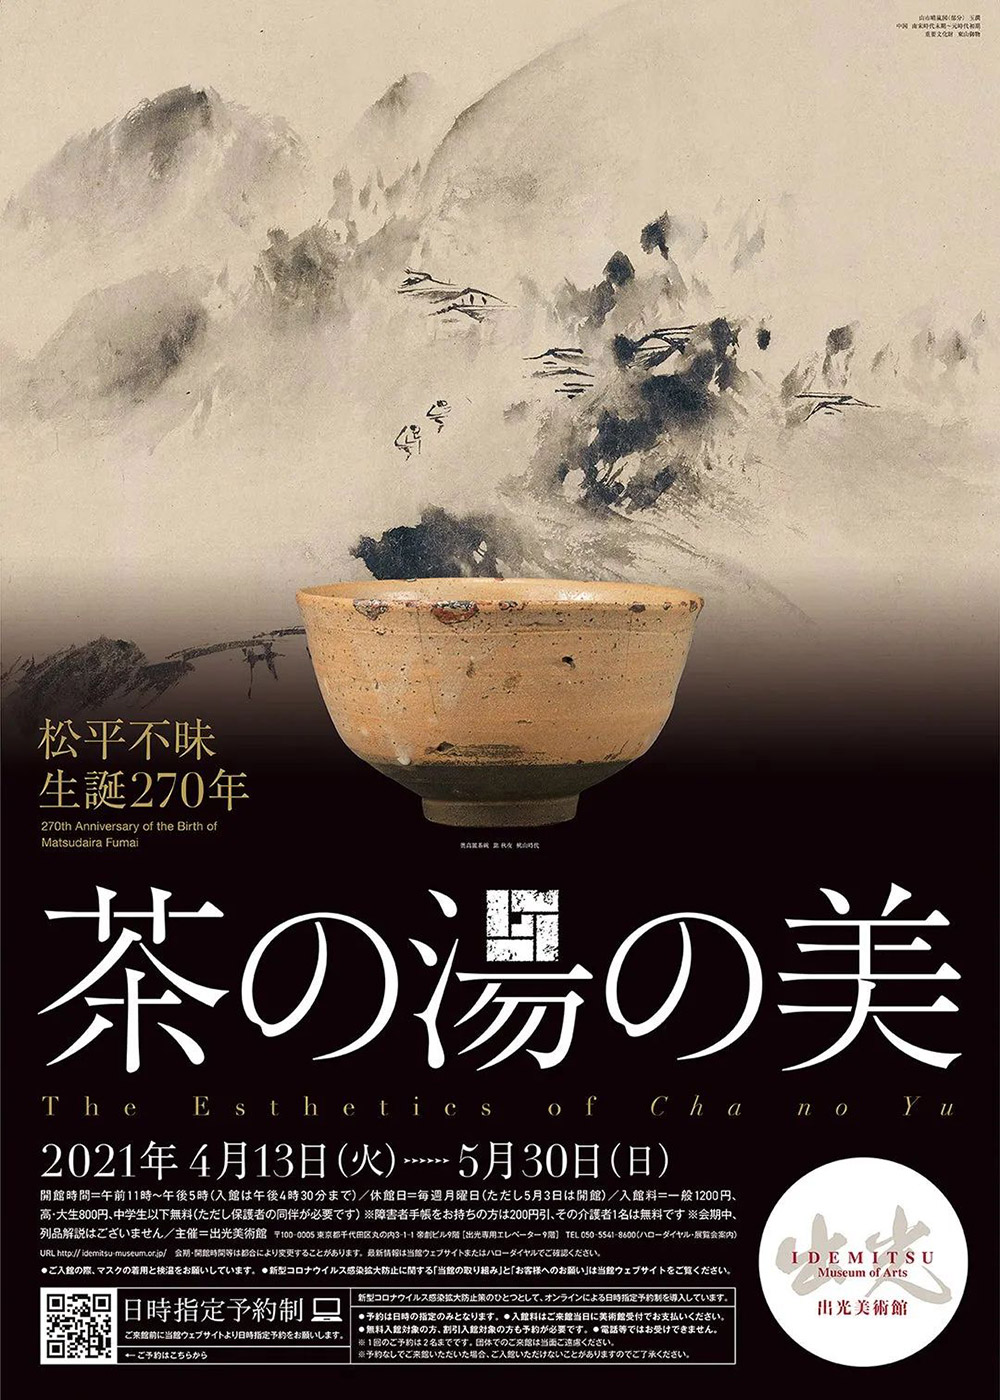 15张十分出色的日本展览海报